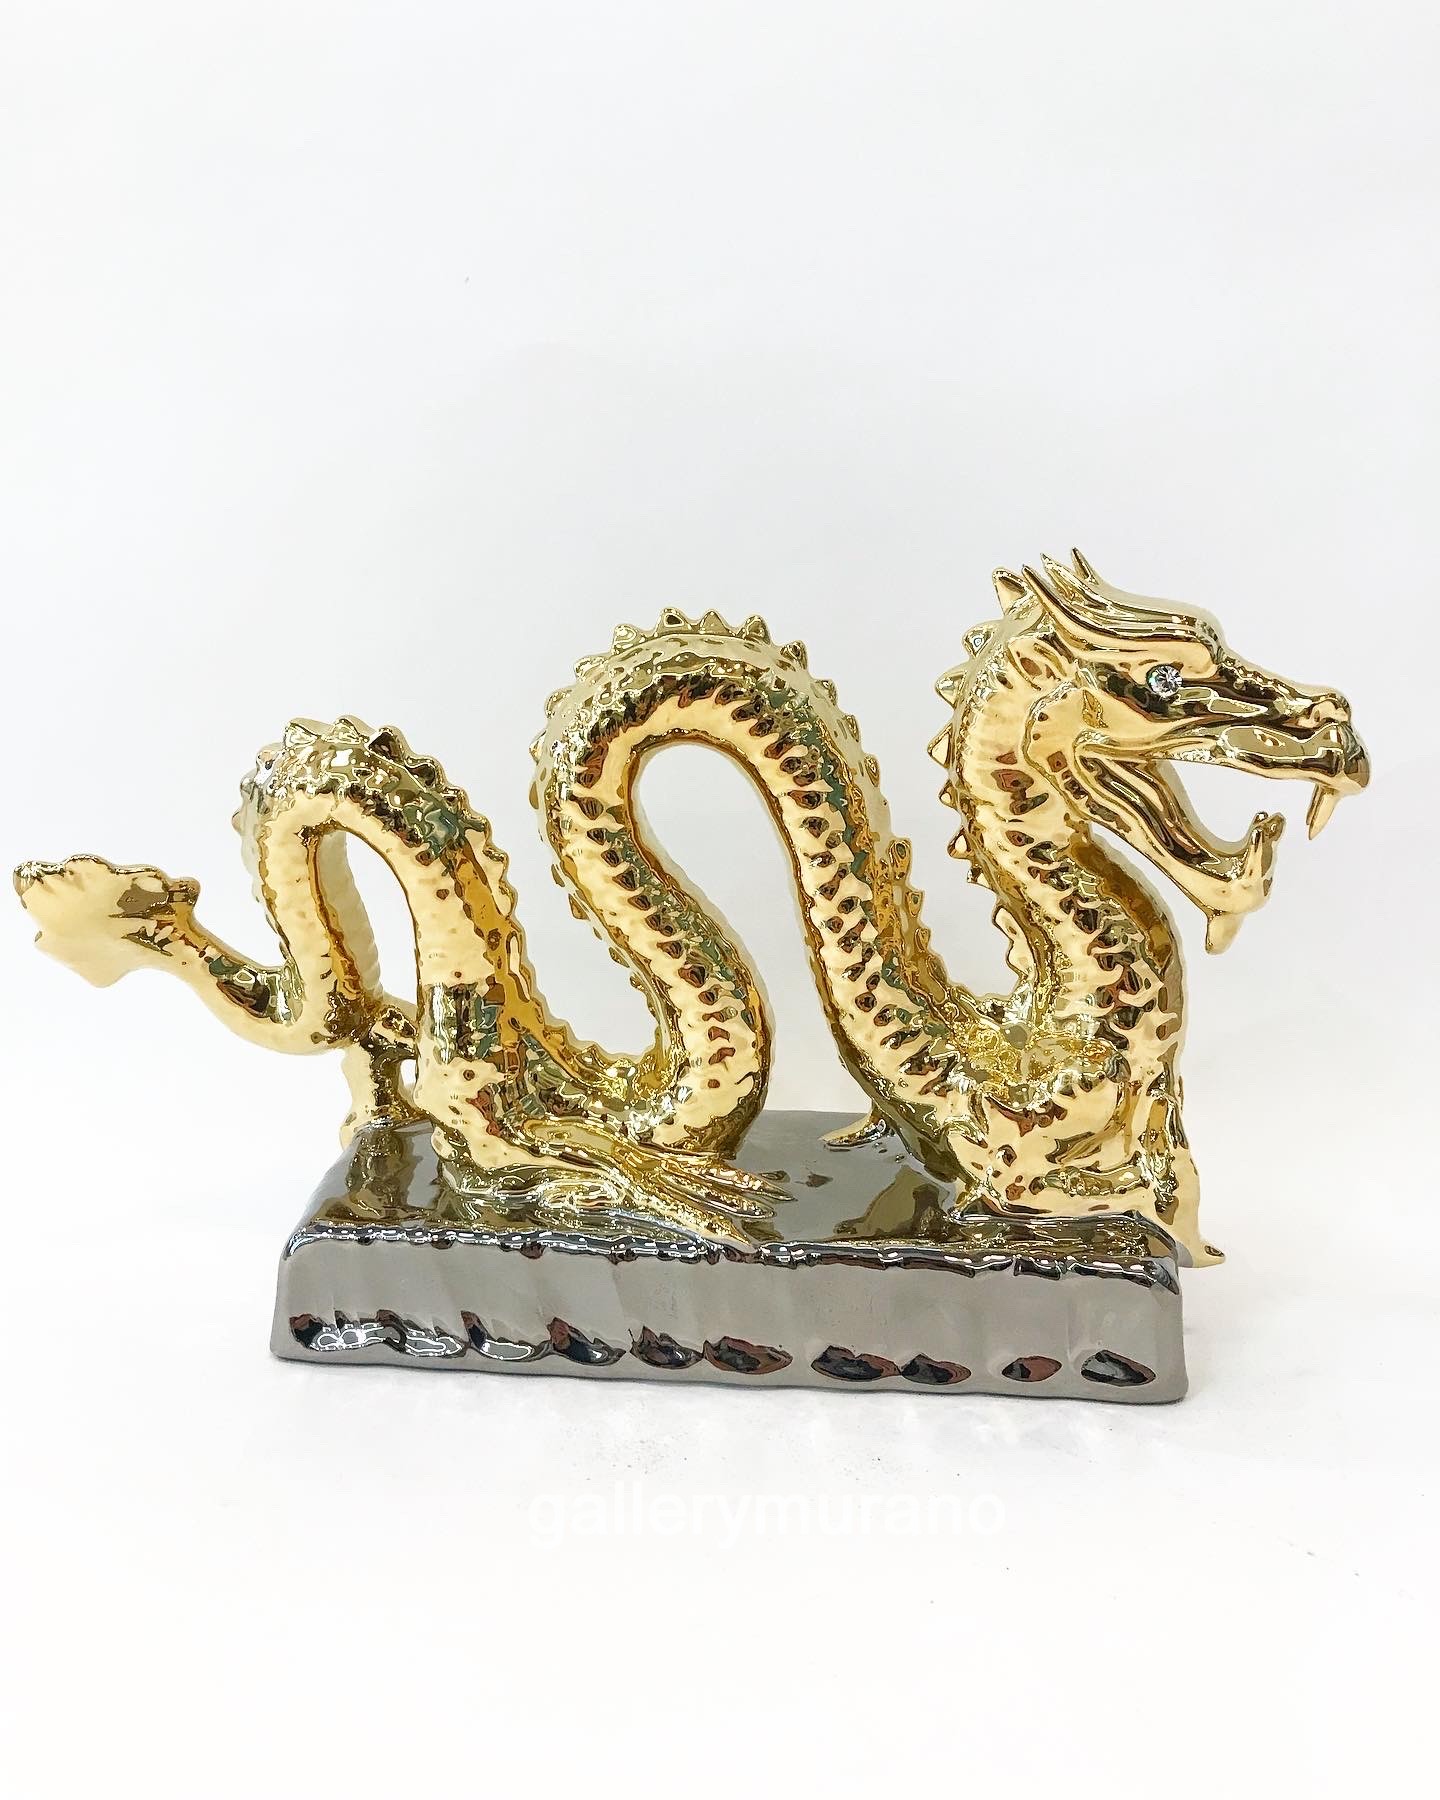 Скульптура "Дракон в золоте" 